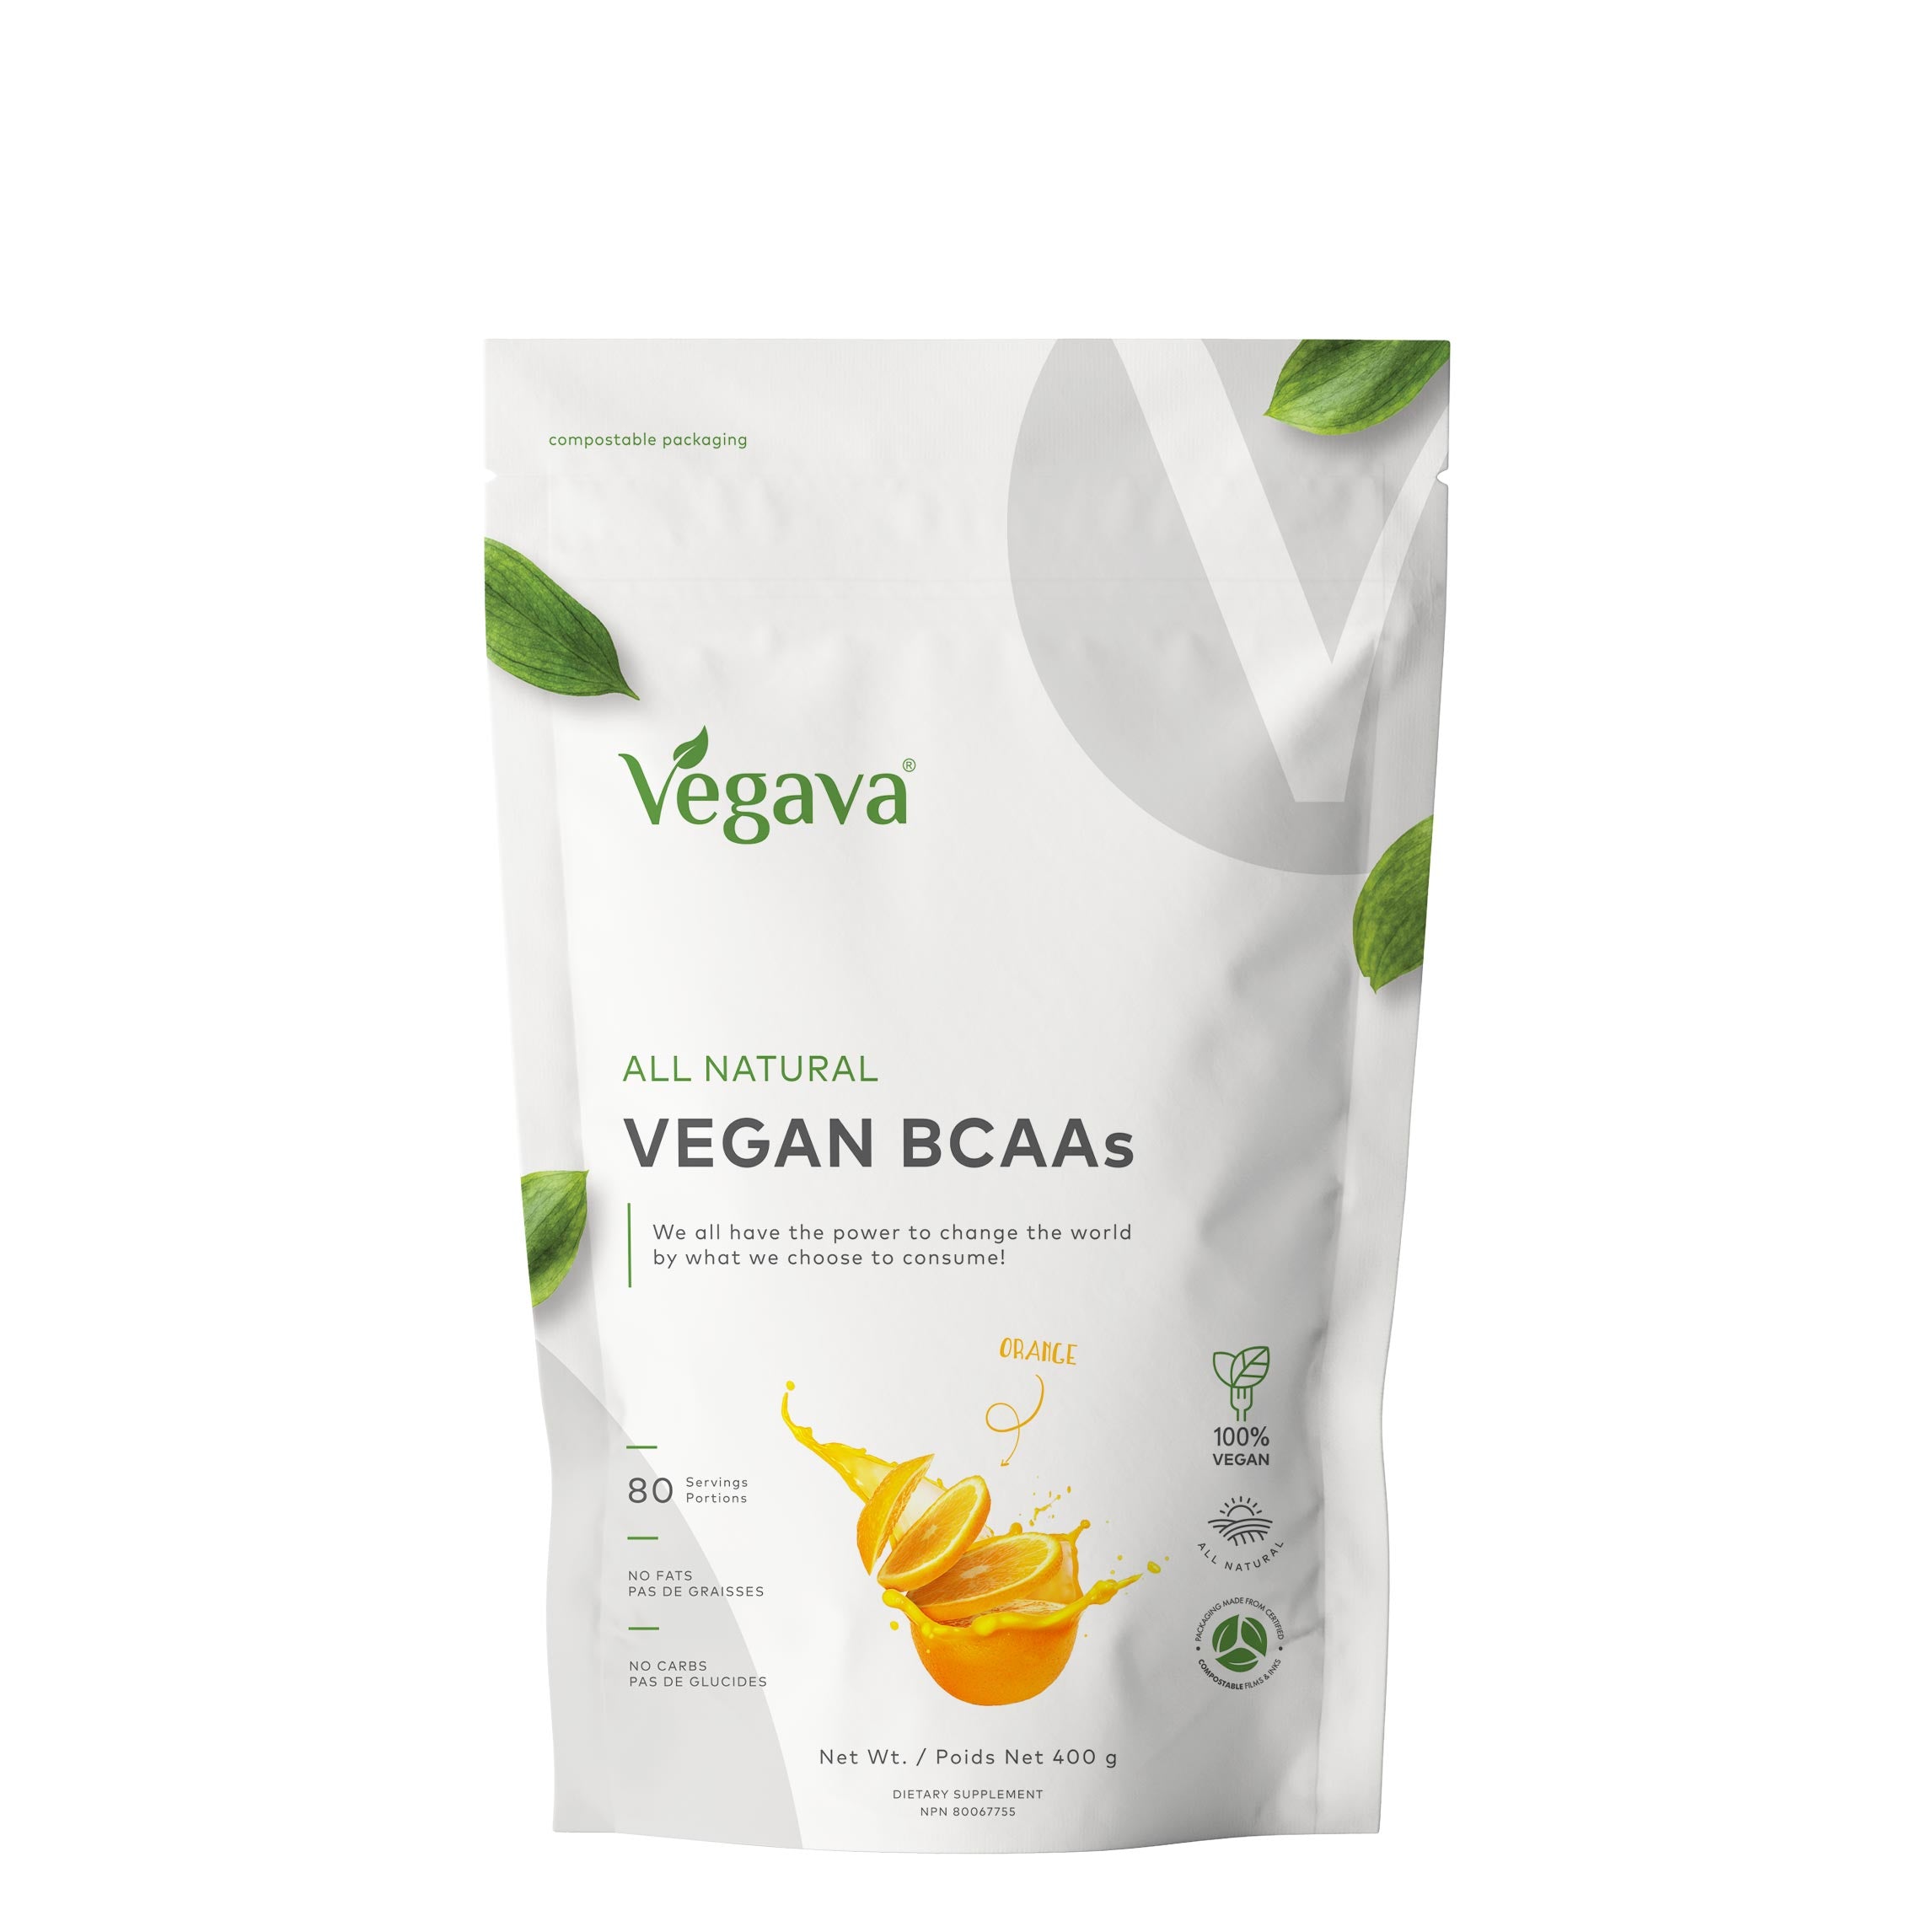 All Natural Vegan BCAAs